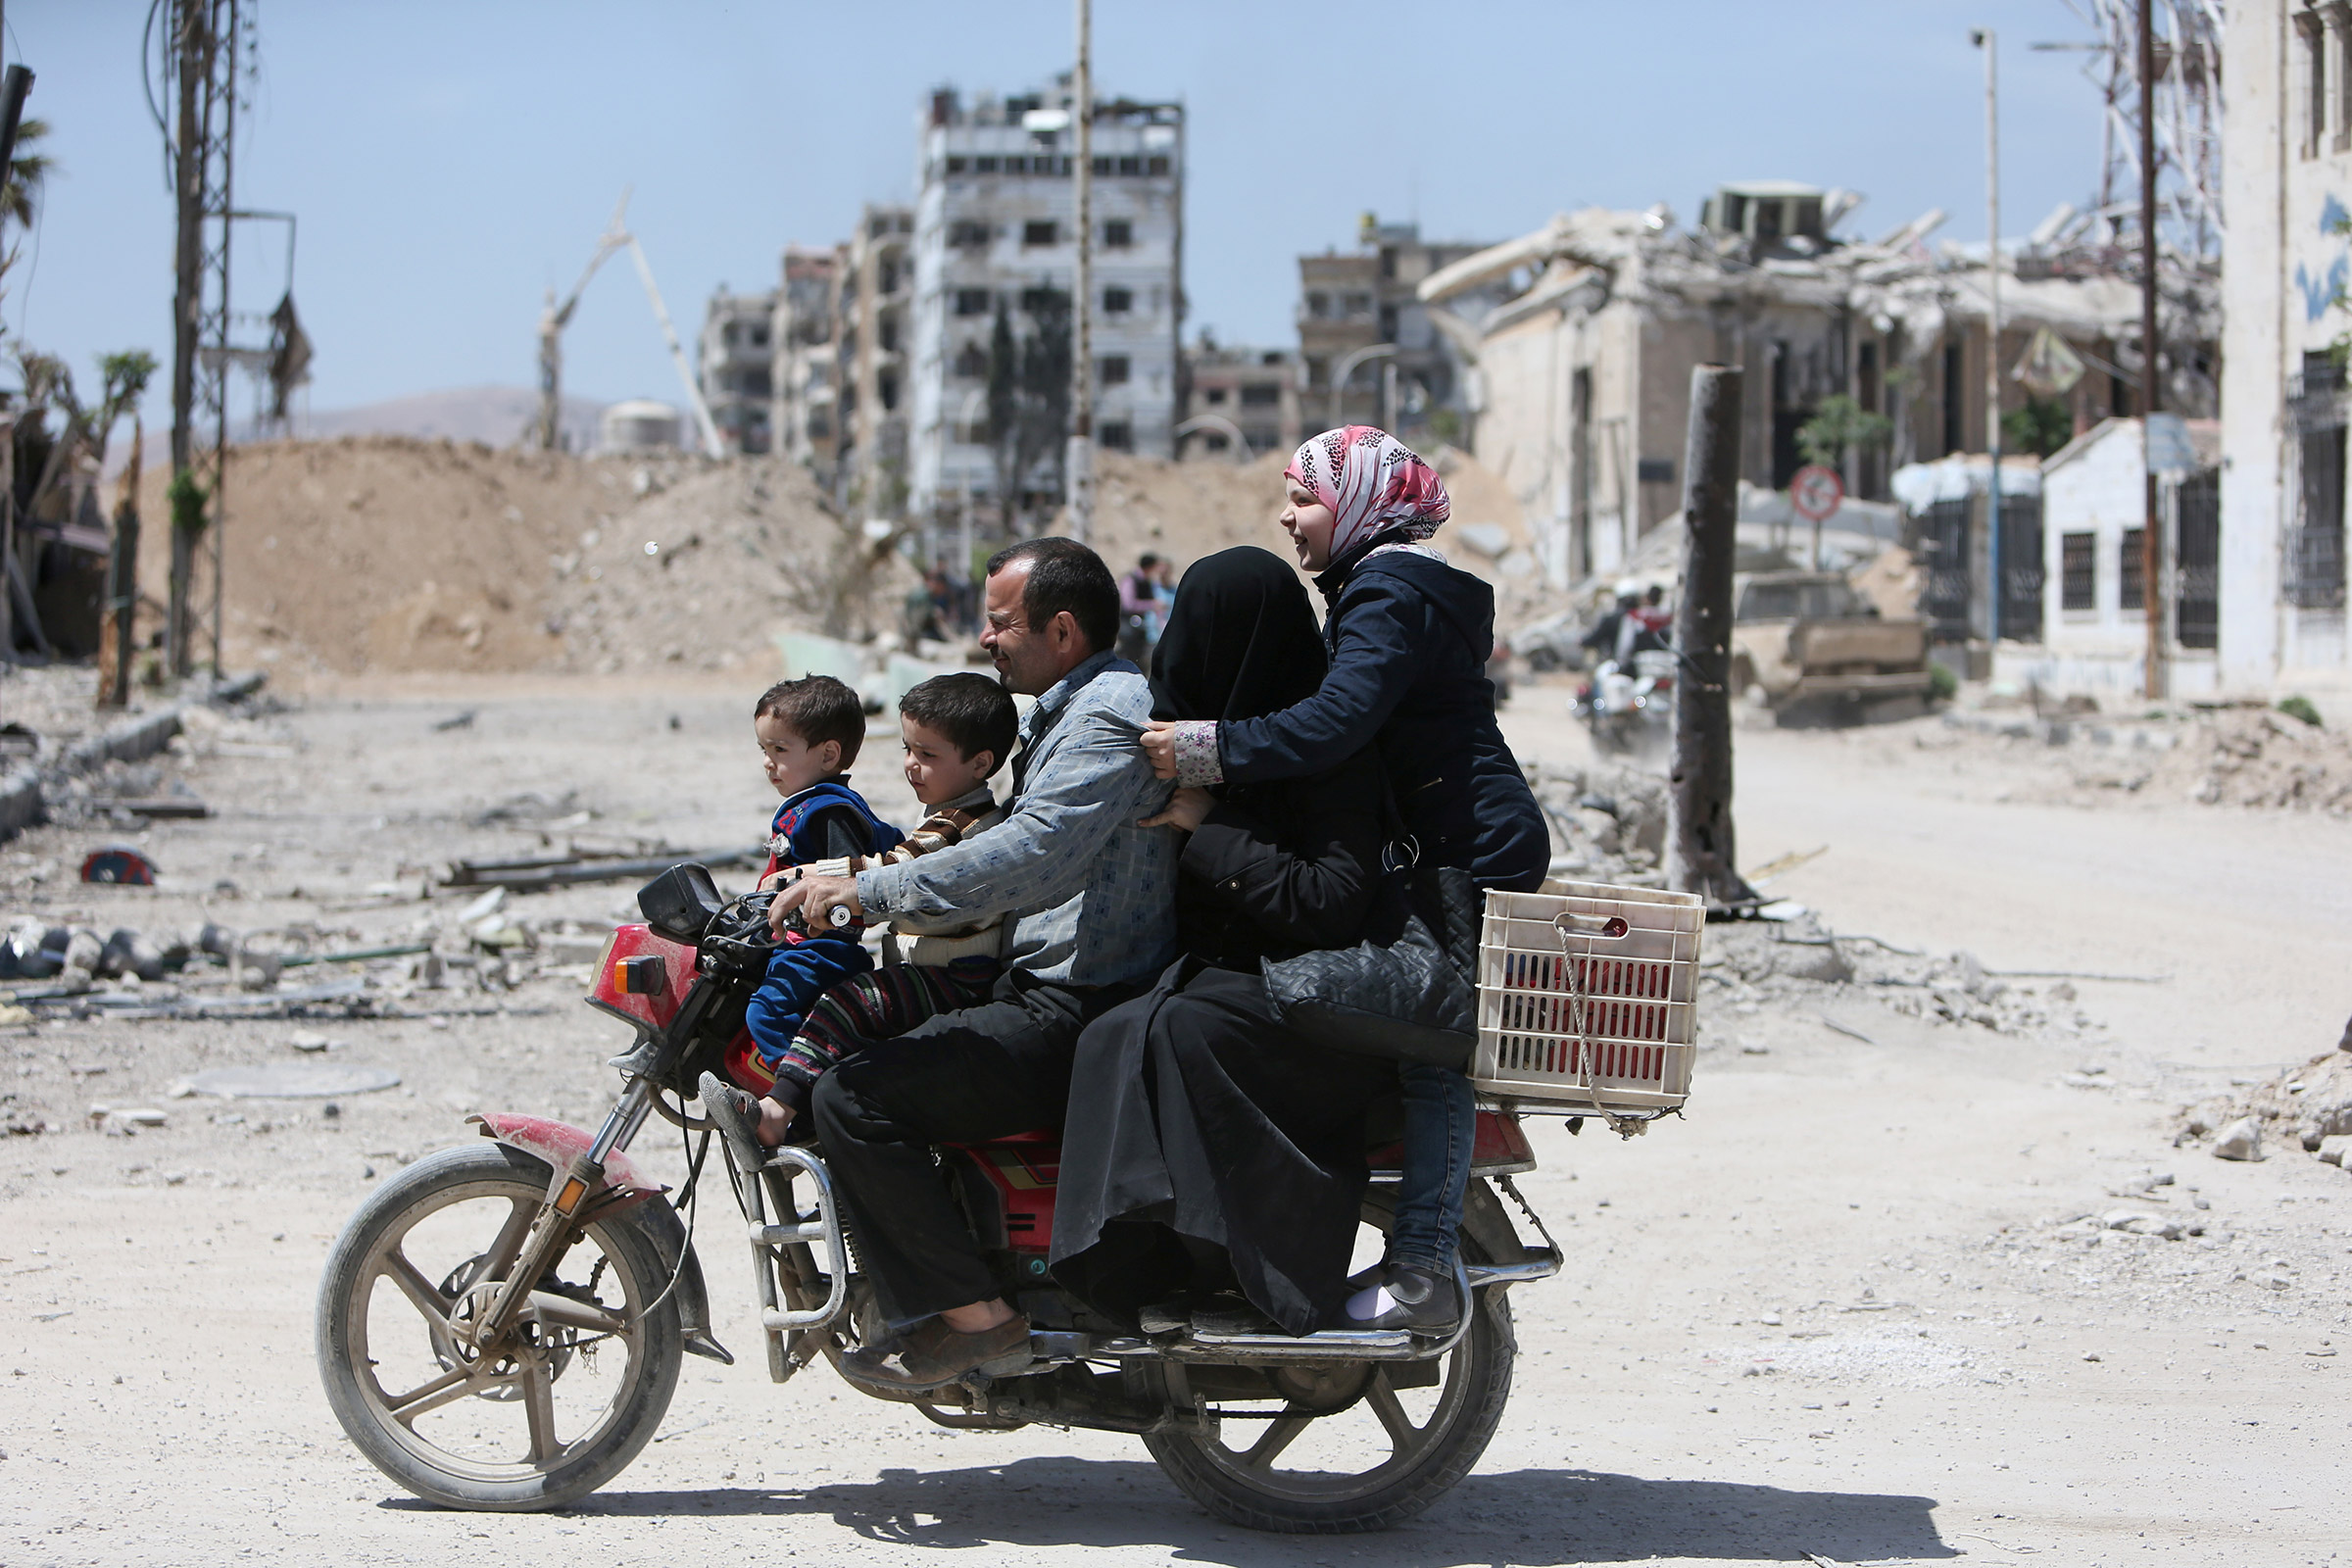 Всего в Сирии за сутки в свои дома вернулись почти 600 мирных жителей. По информации Минобороны РФ, с начала гуманитарной операции число вернувшихся сирийцев составило более 59 тыс. человек.
